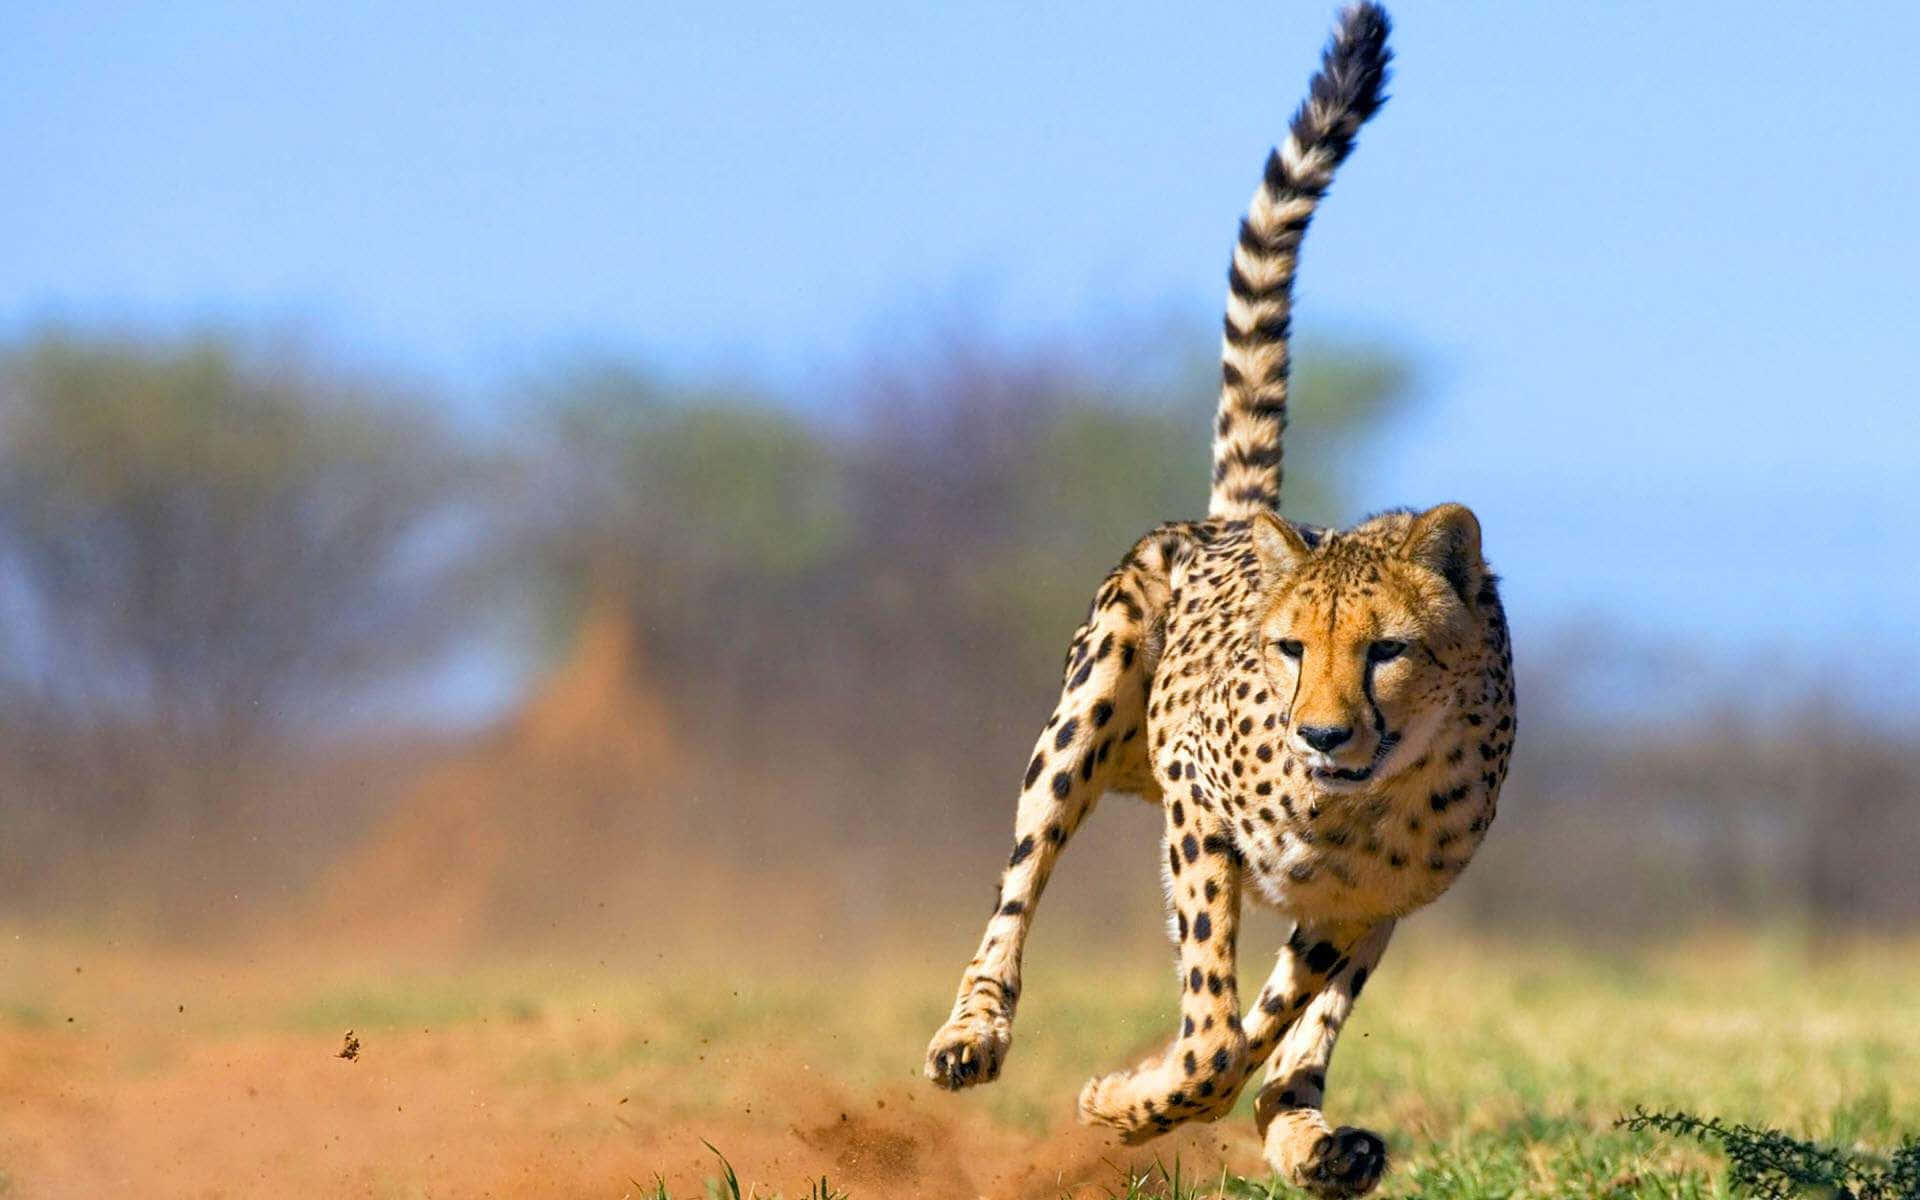 Et smukt gepard, der viser sin styrke og elegance